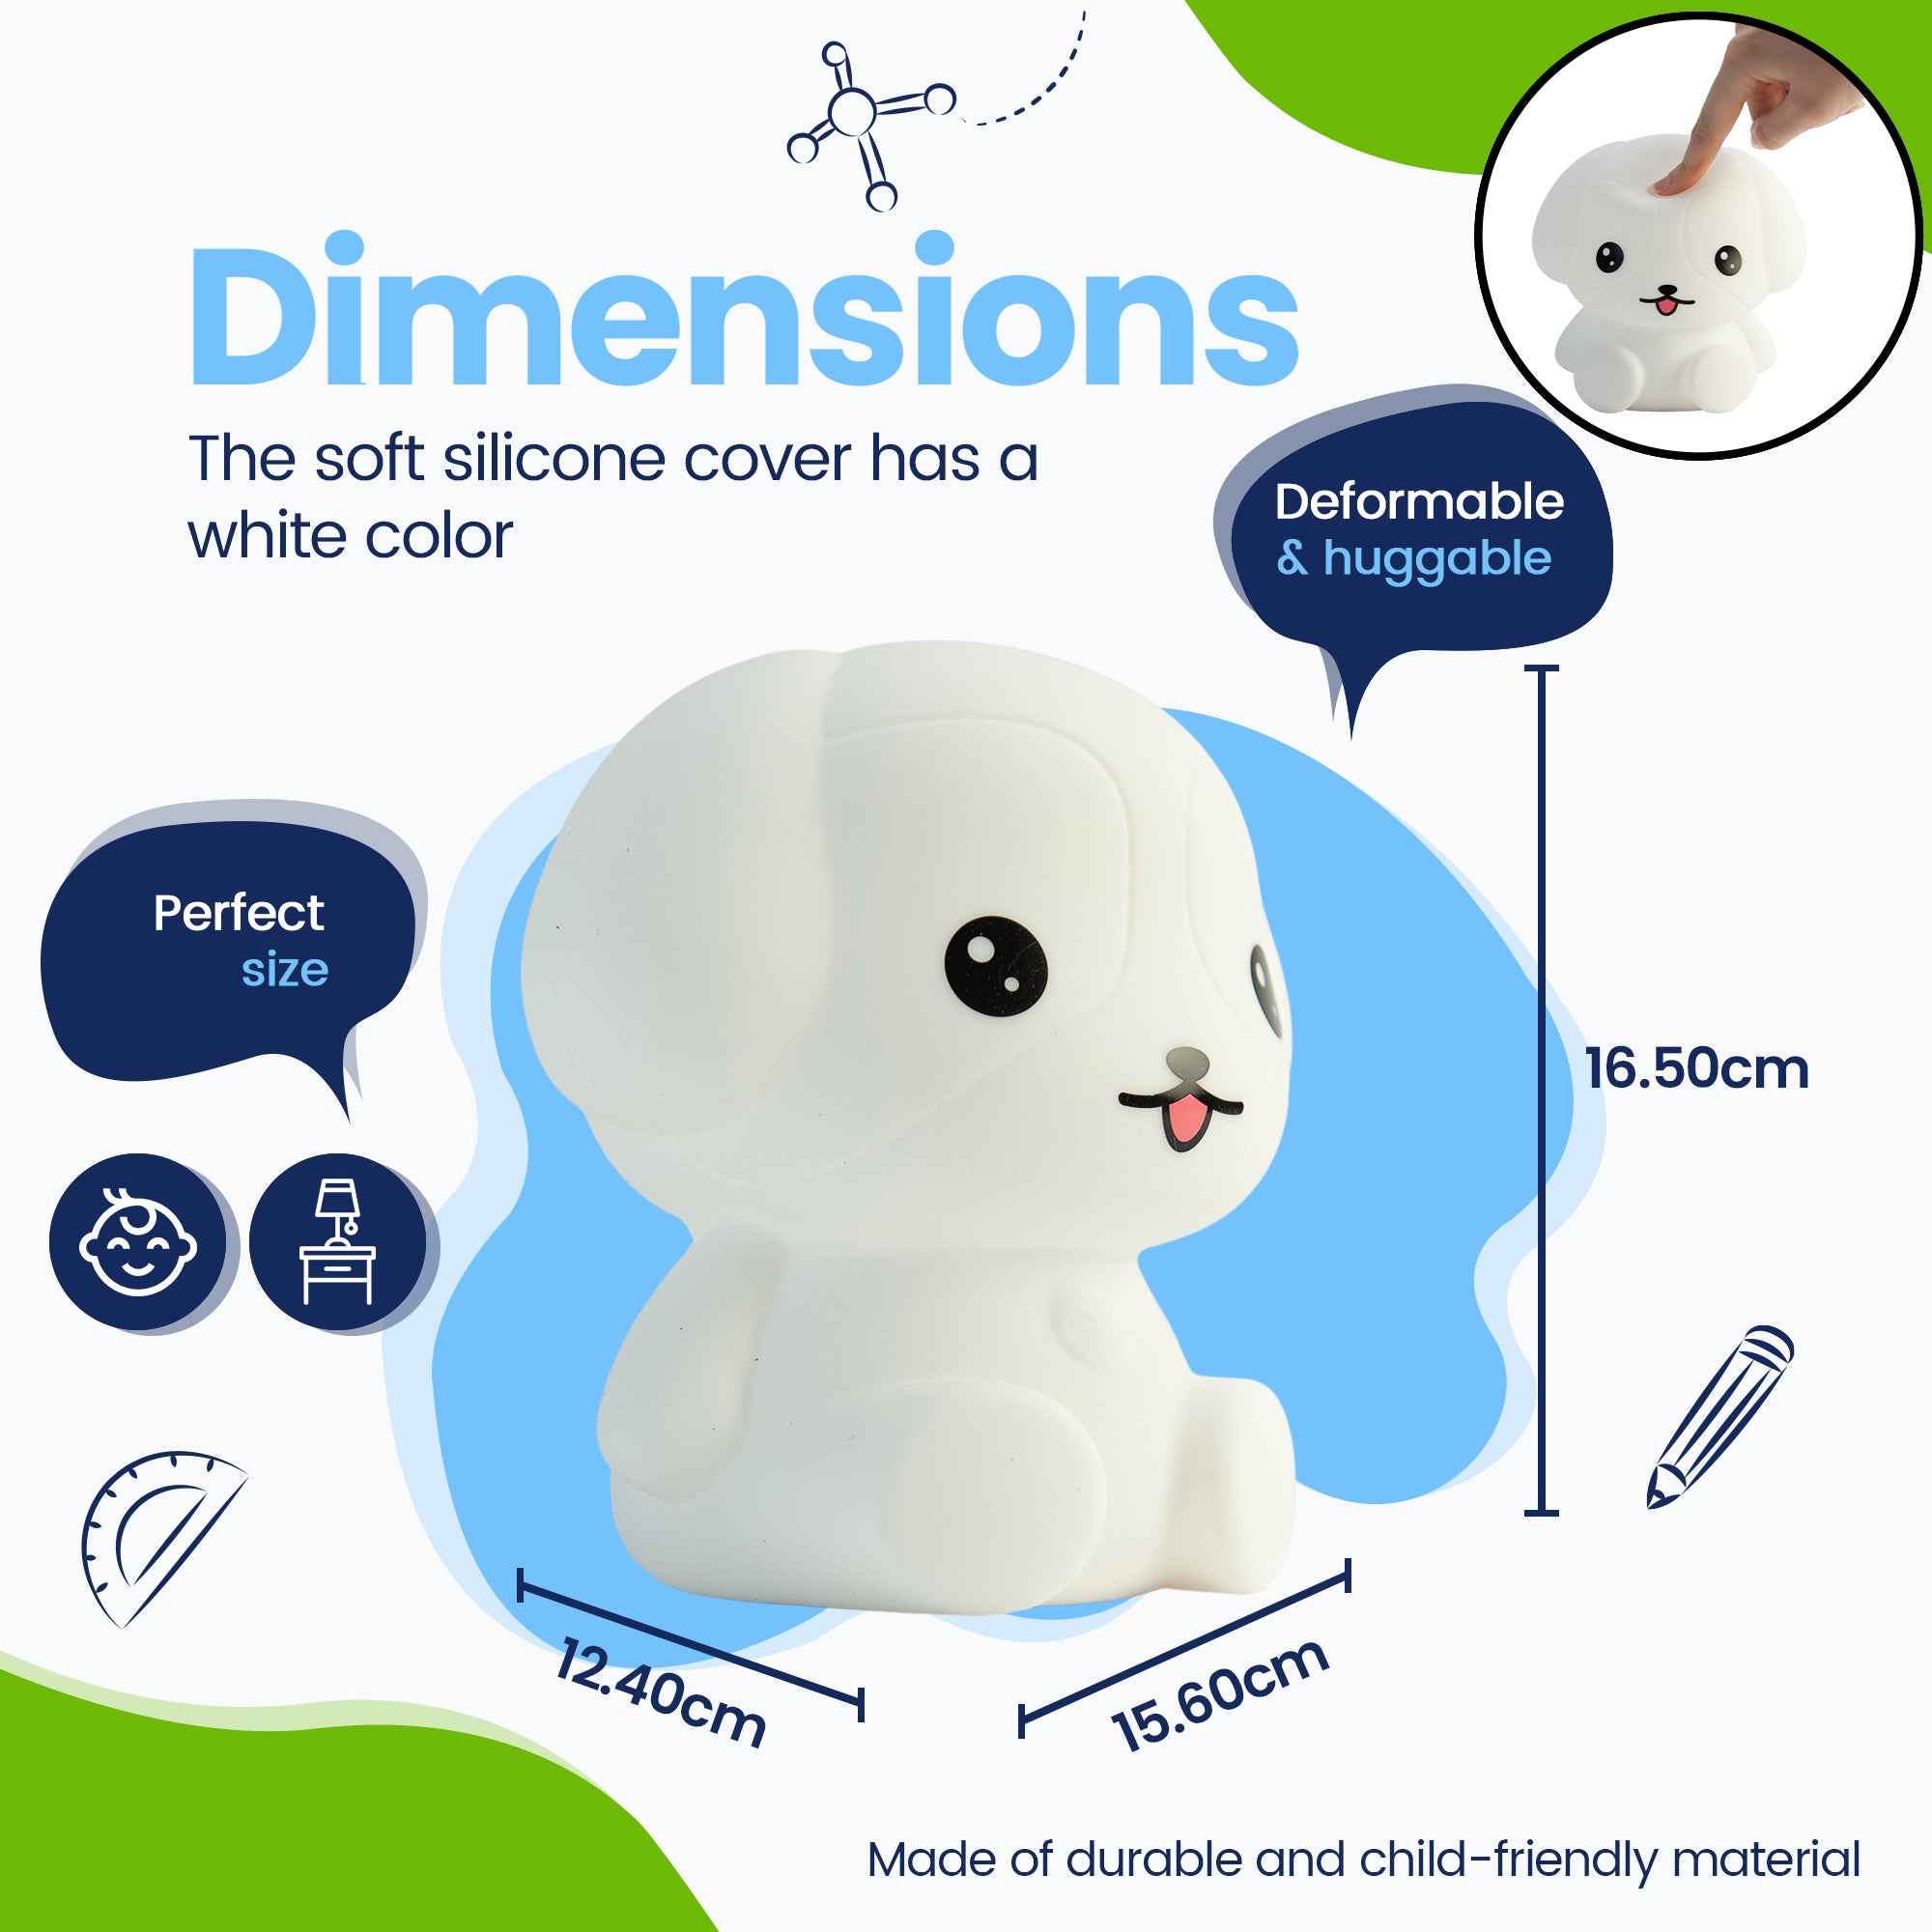 Dimensioner Puppy Night Lamp - Perfekt størrelse - Premium Design - Silikoneovertrækket er hvidt i farven